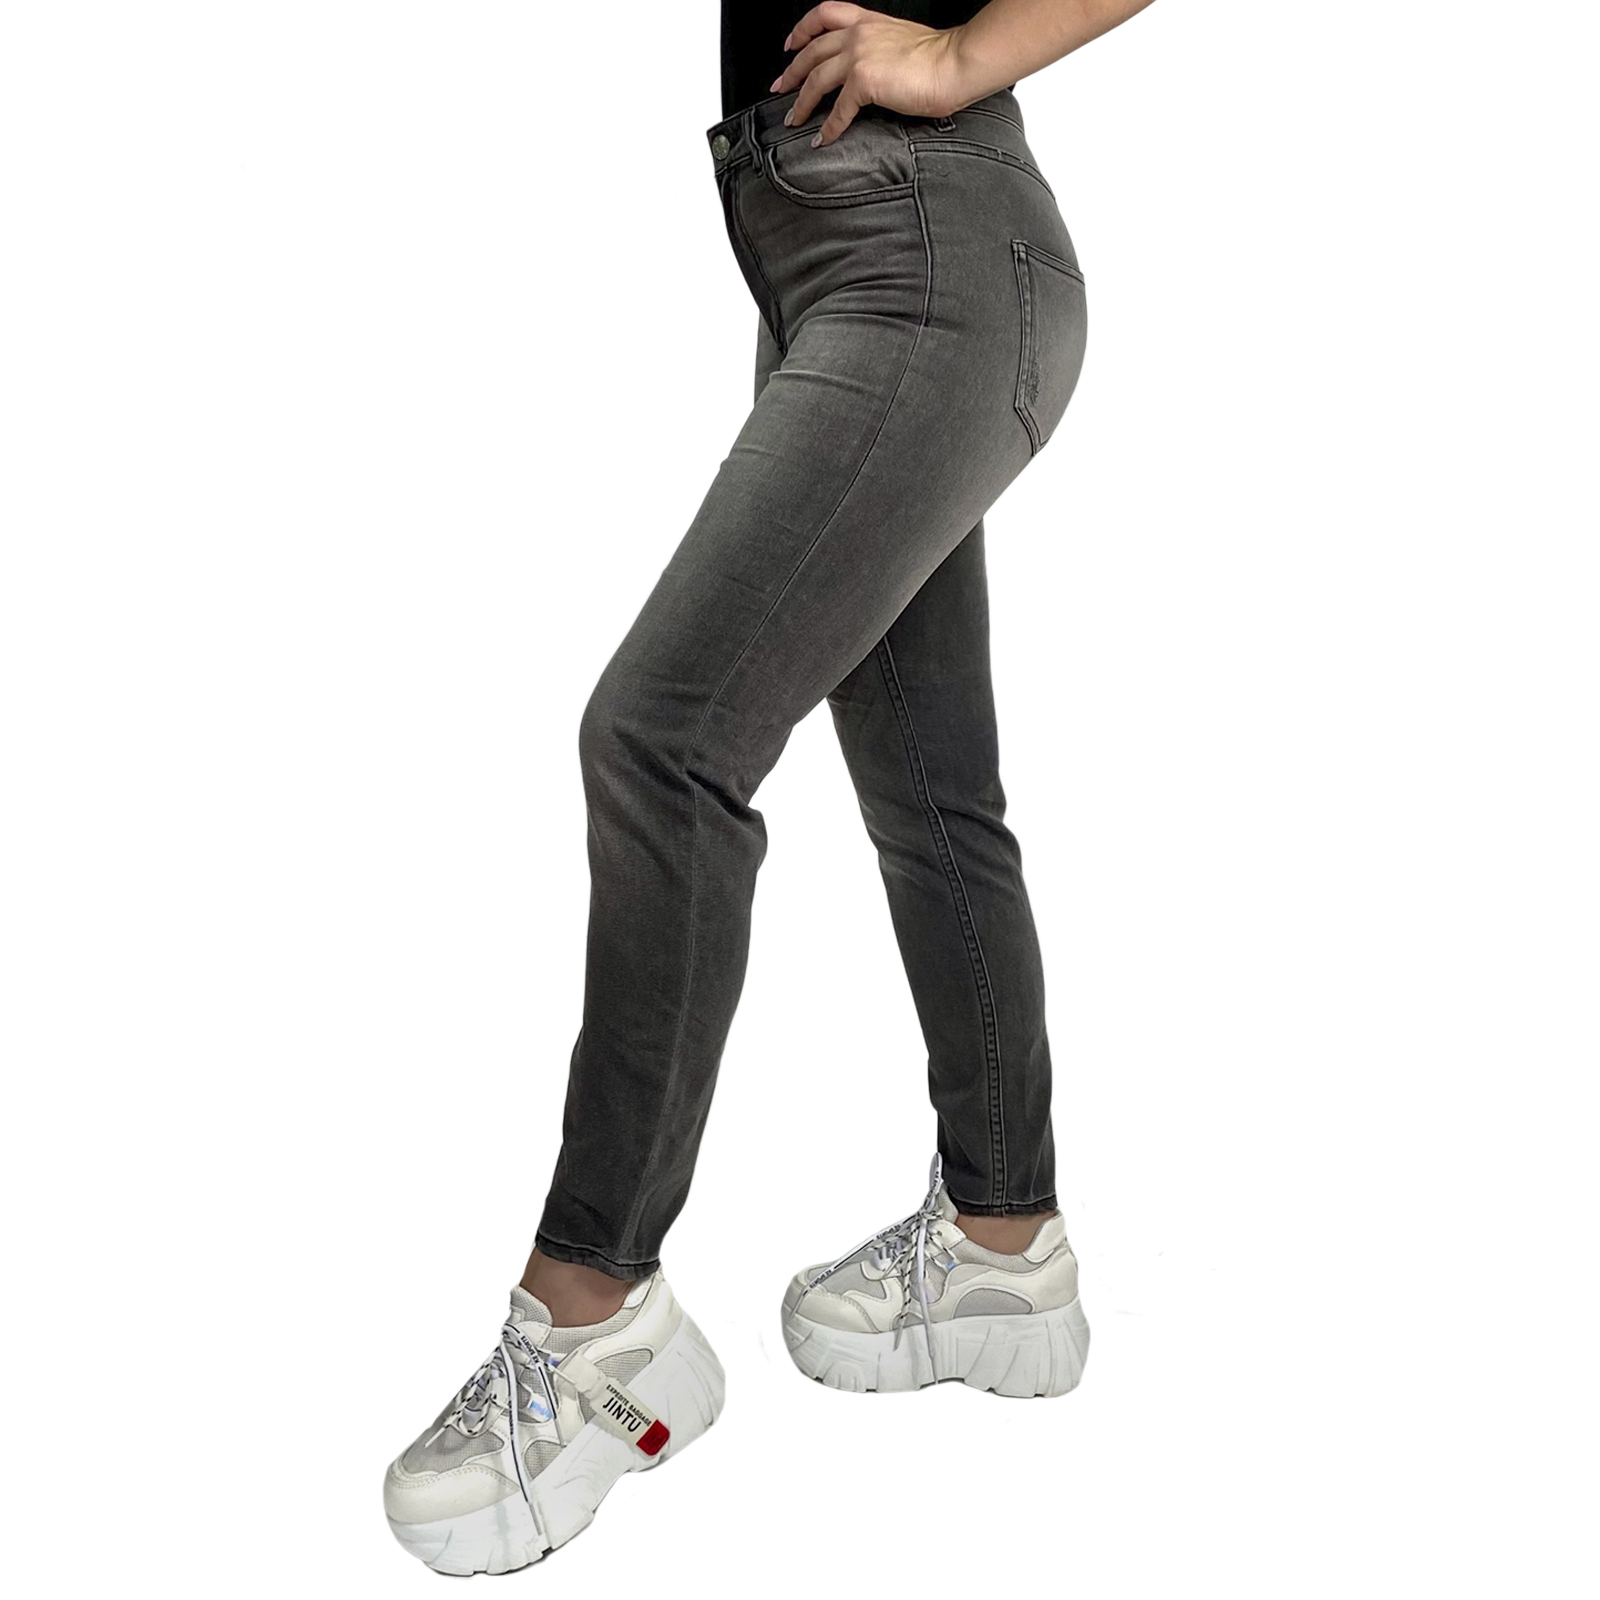 Заказать в интернет магазине женские джинсы